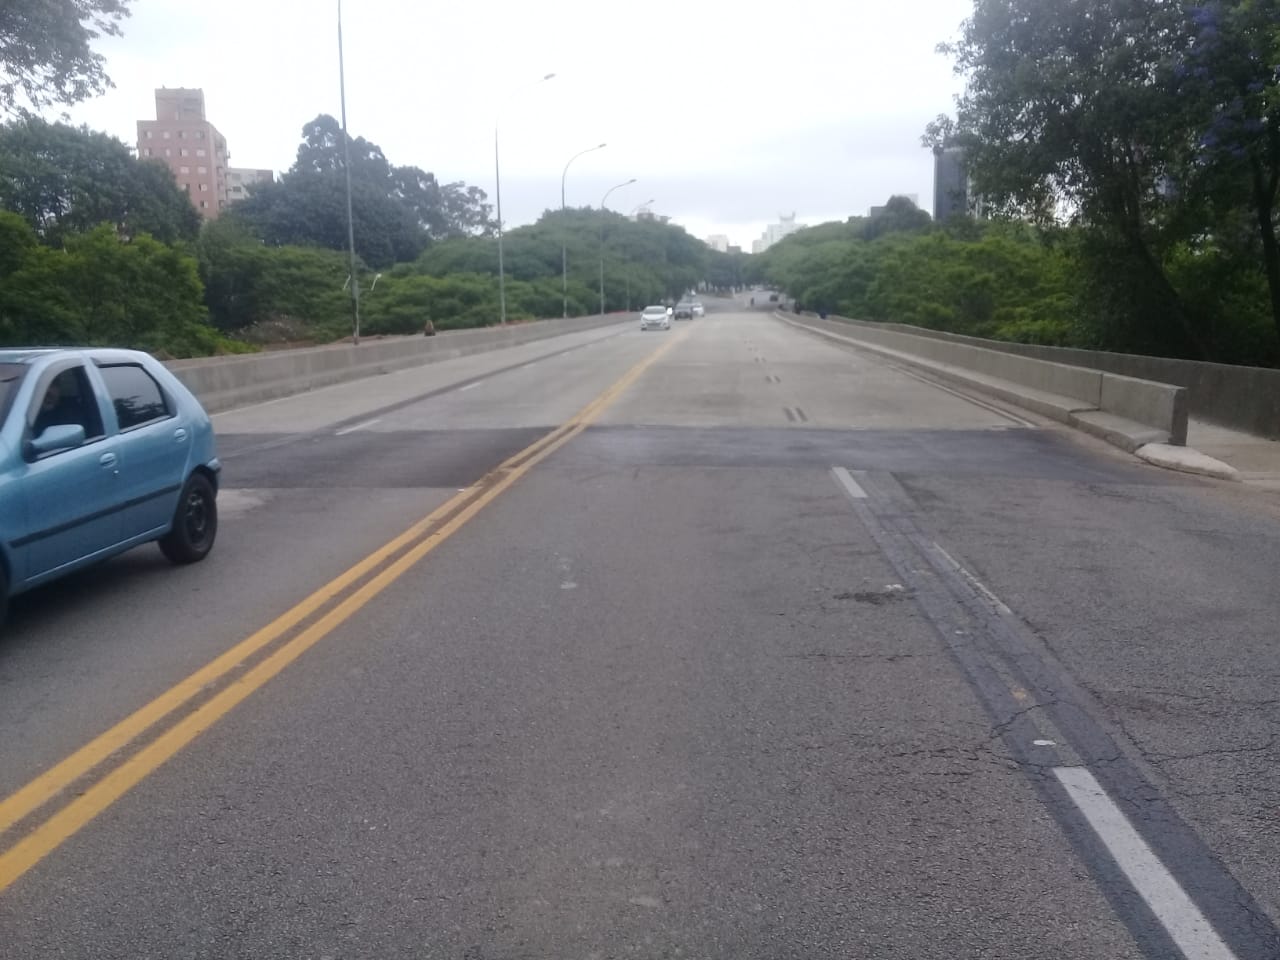 Fotografia de uma avenida com pouco movimento de veículos o dia está nublado